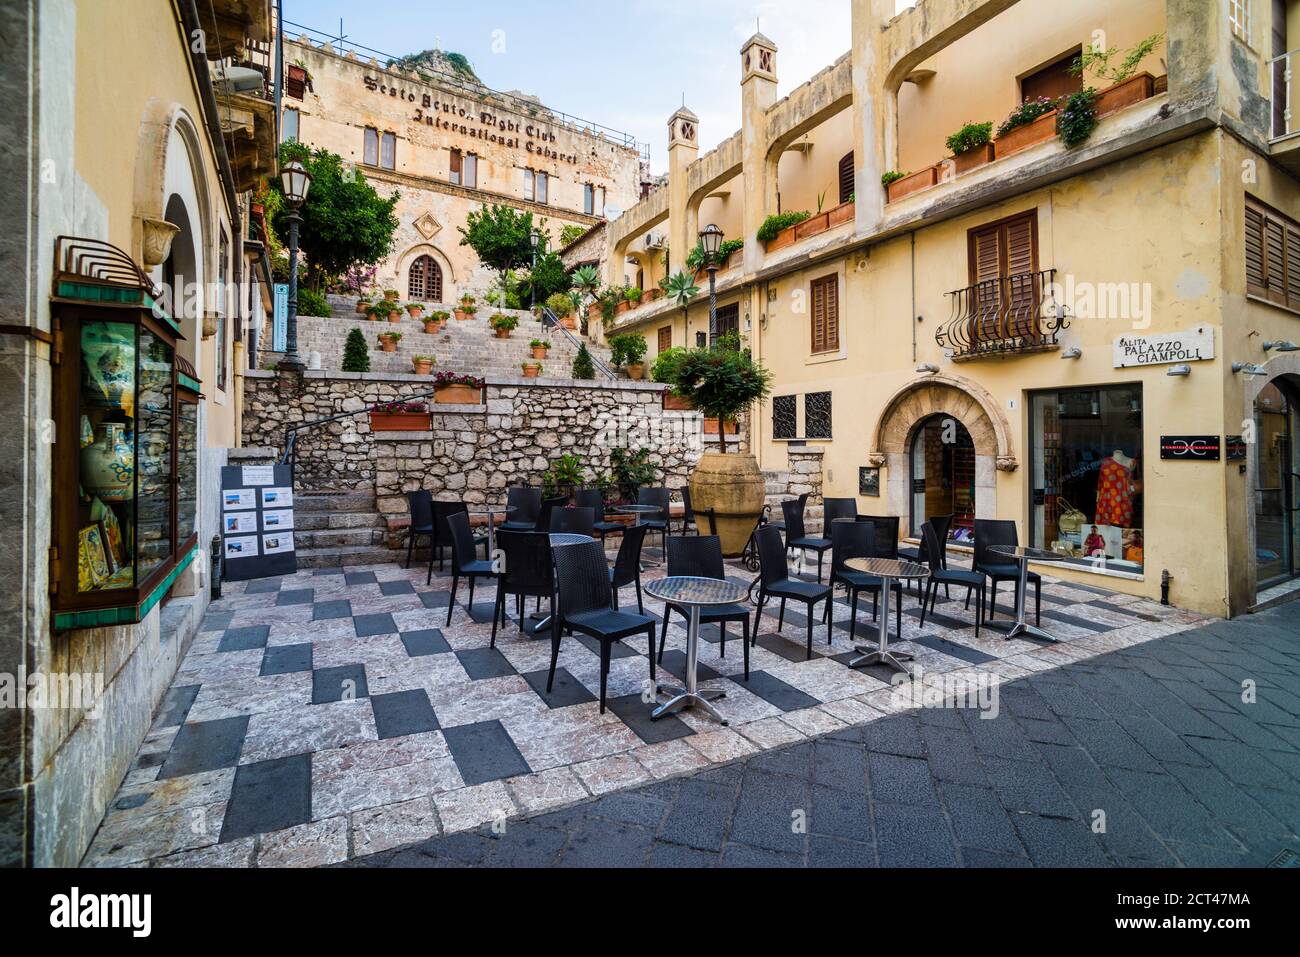 Palazzo Ciampoli on Corso Umberto, the main street in the centre of Taormina, Sicily, Italy, Europe Stock Photo